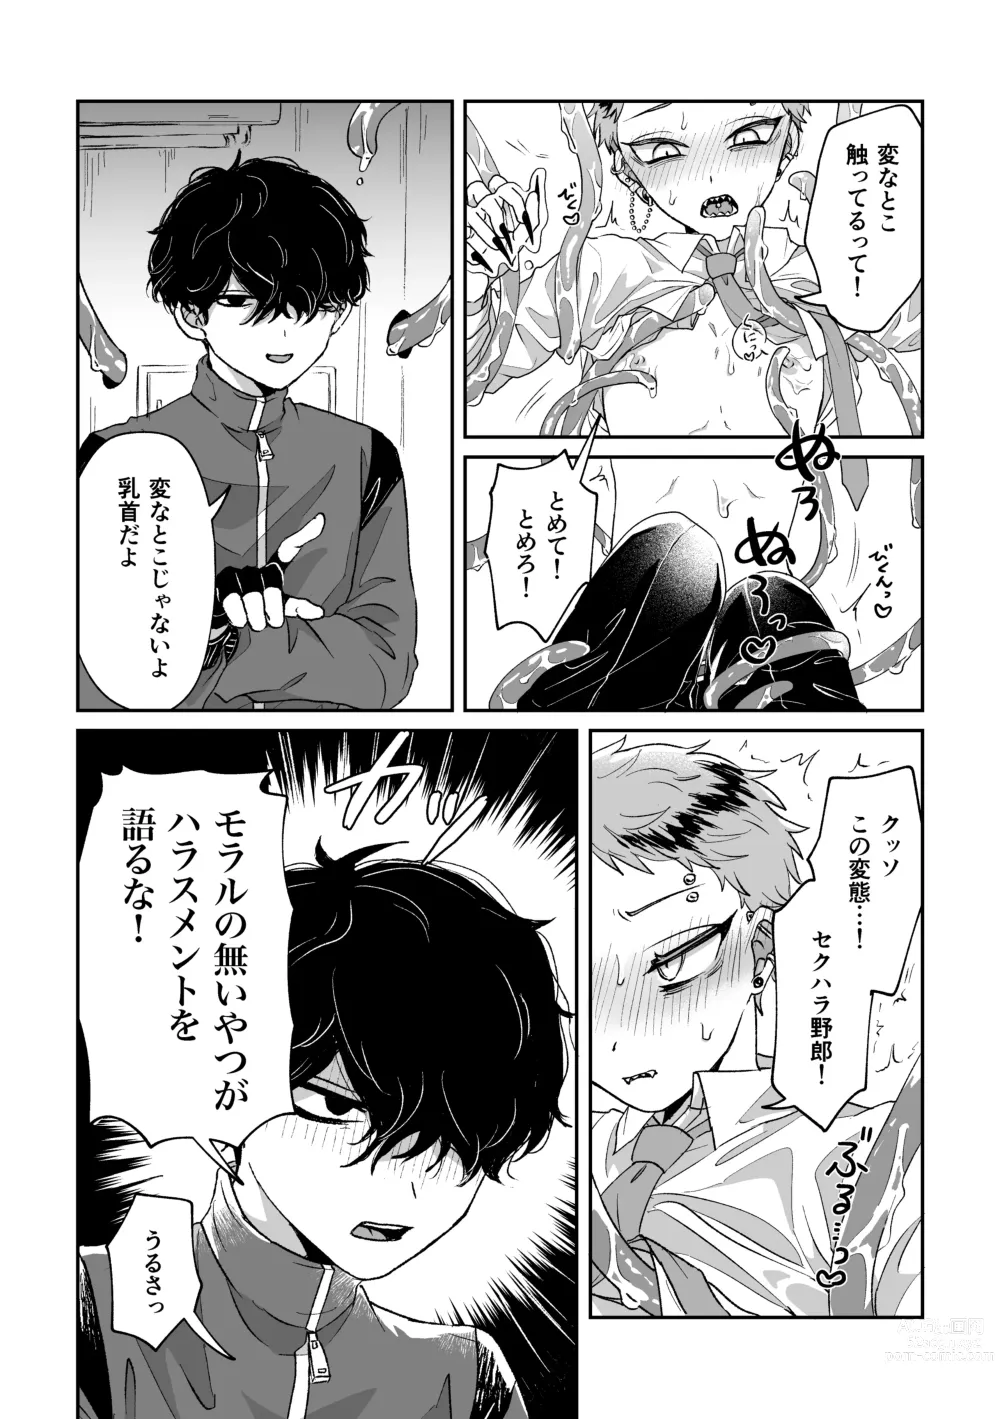 Page 7 of doujinshi Warui kedo Kore Ero Manga nanda yo ne